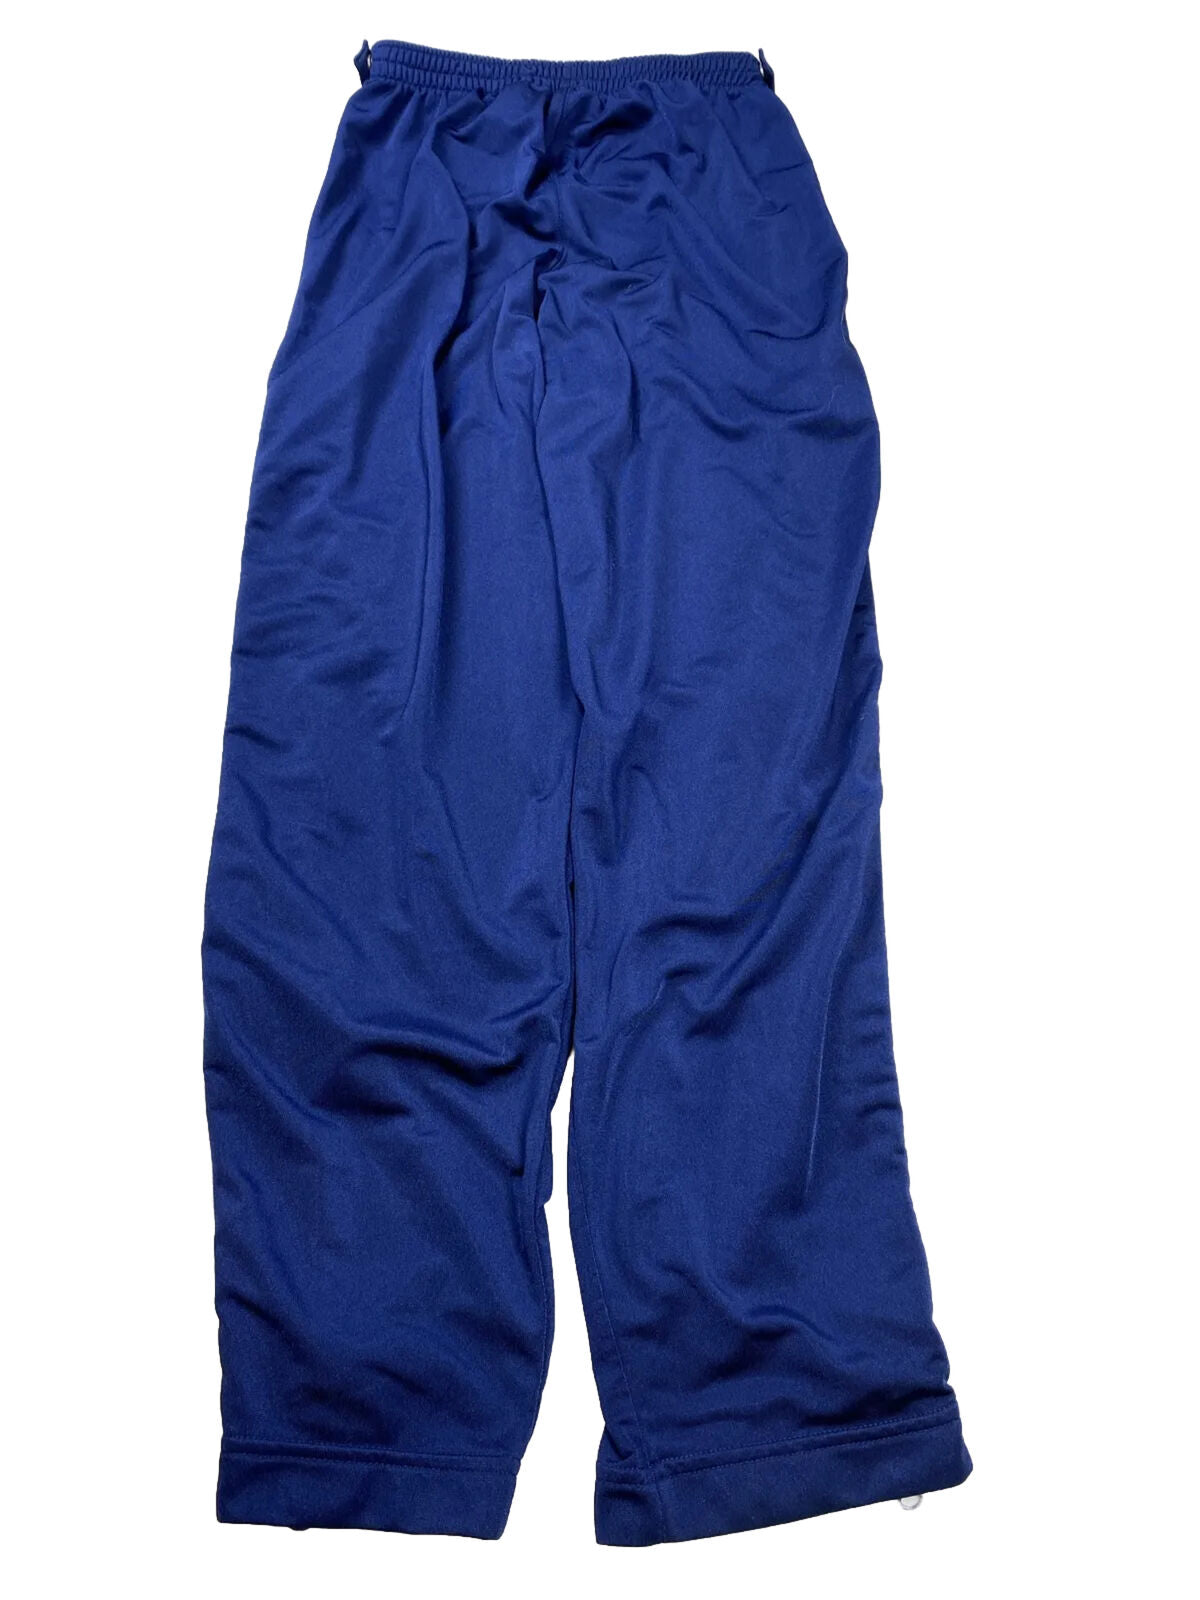 Nike Boys Kids Vintage pantalones deportivos con cremallera a rayas azules y amarillas - XL